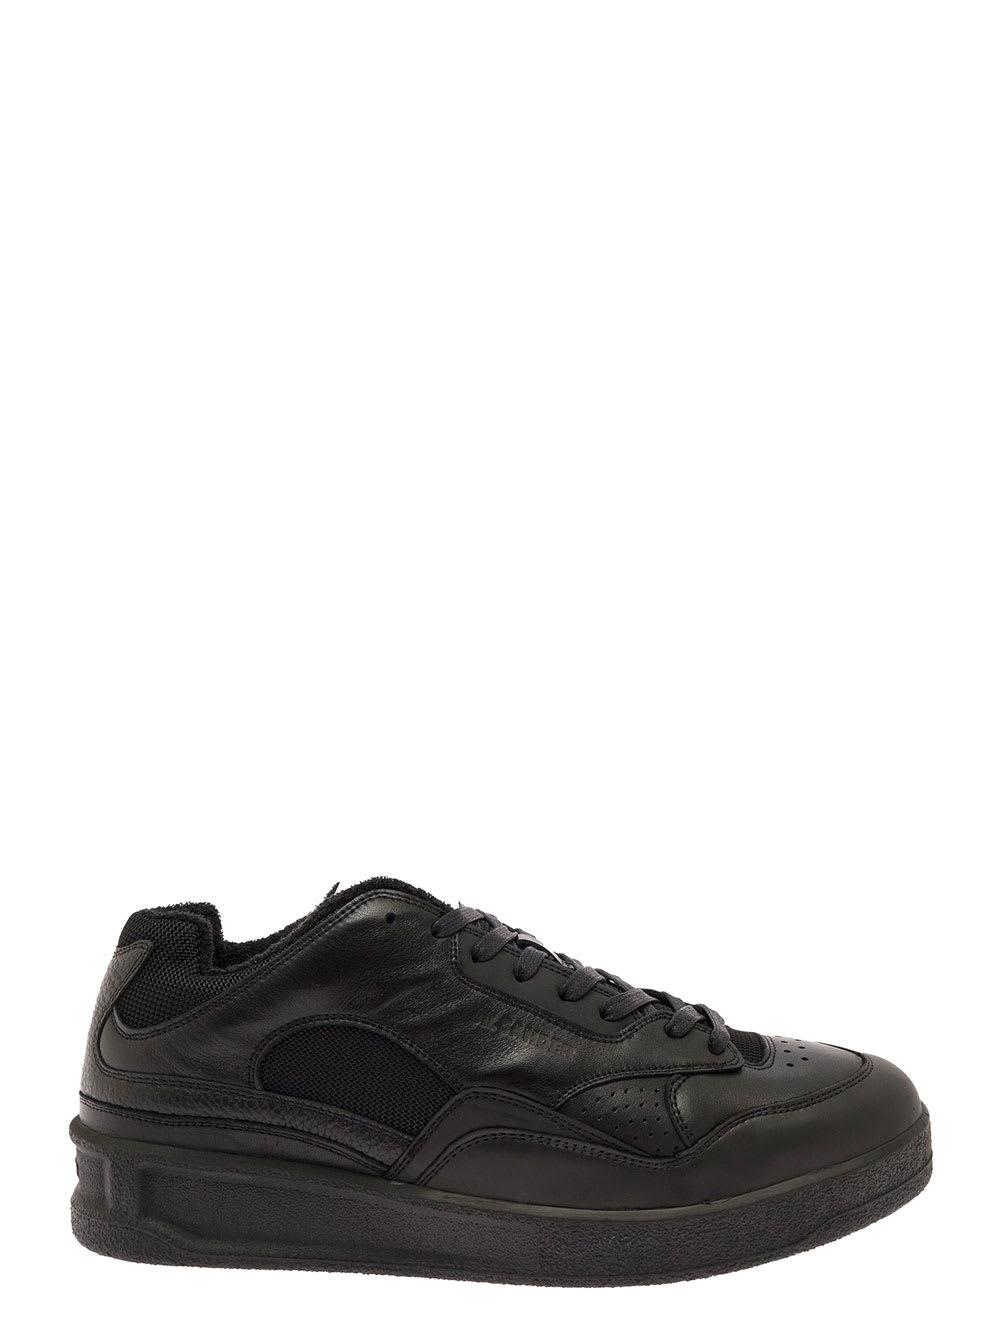 Black Leather Low Sneakers Jil Sander Man